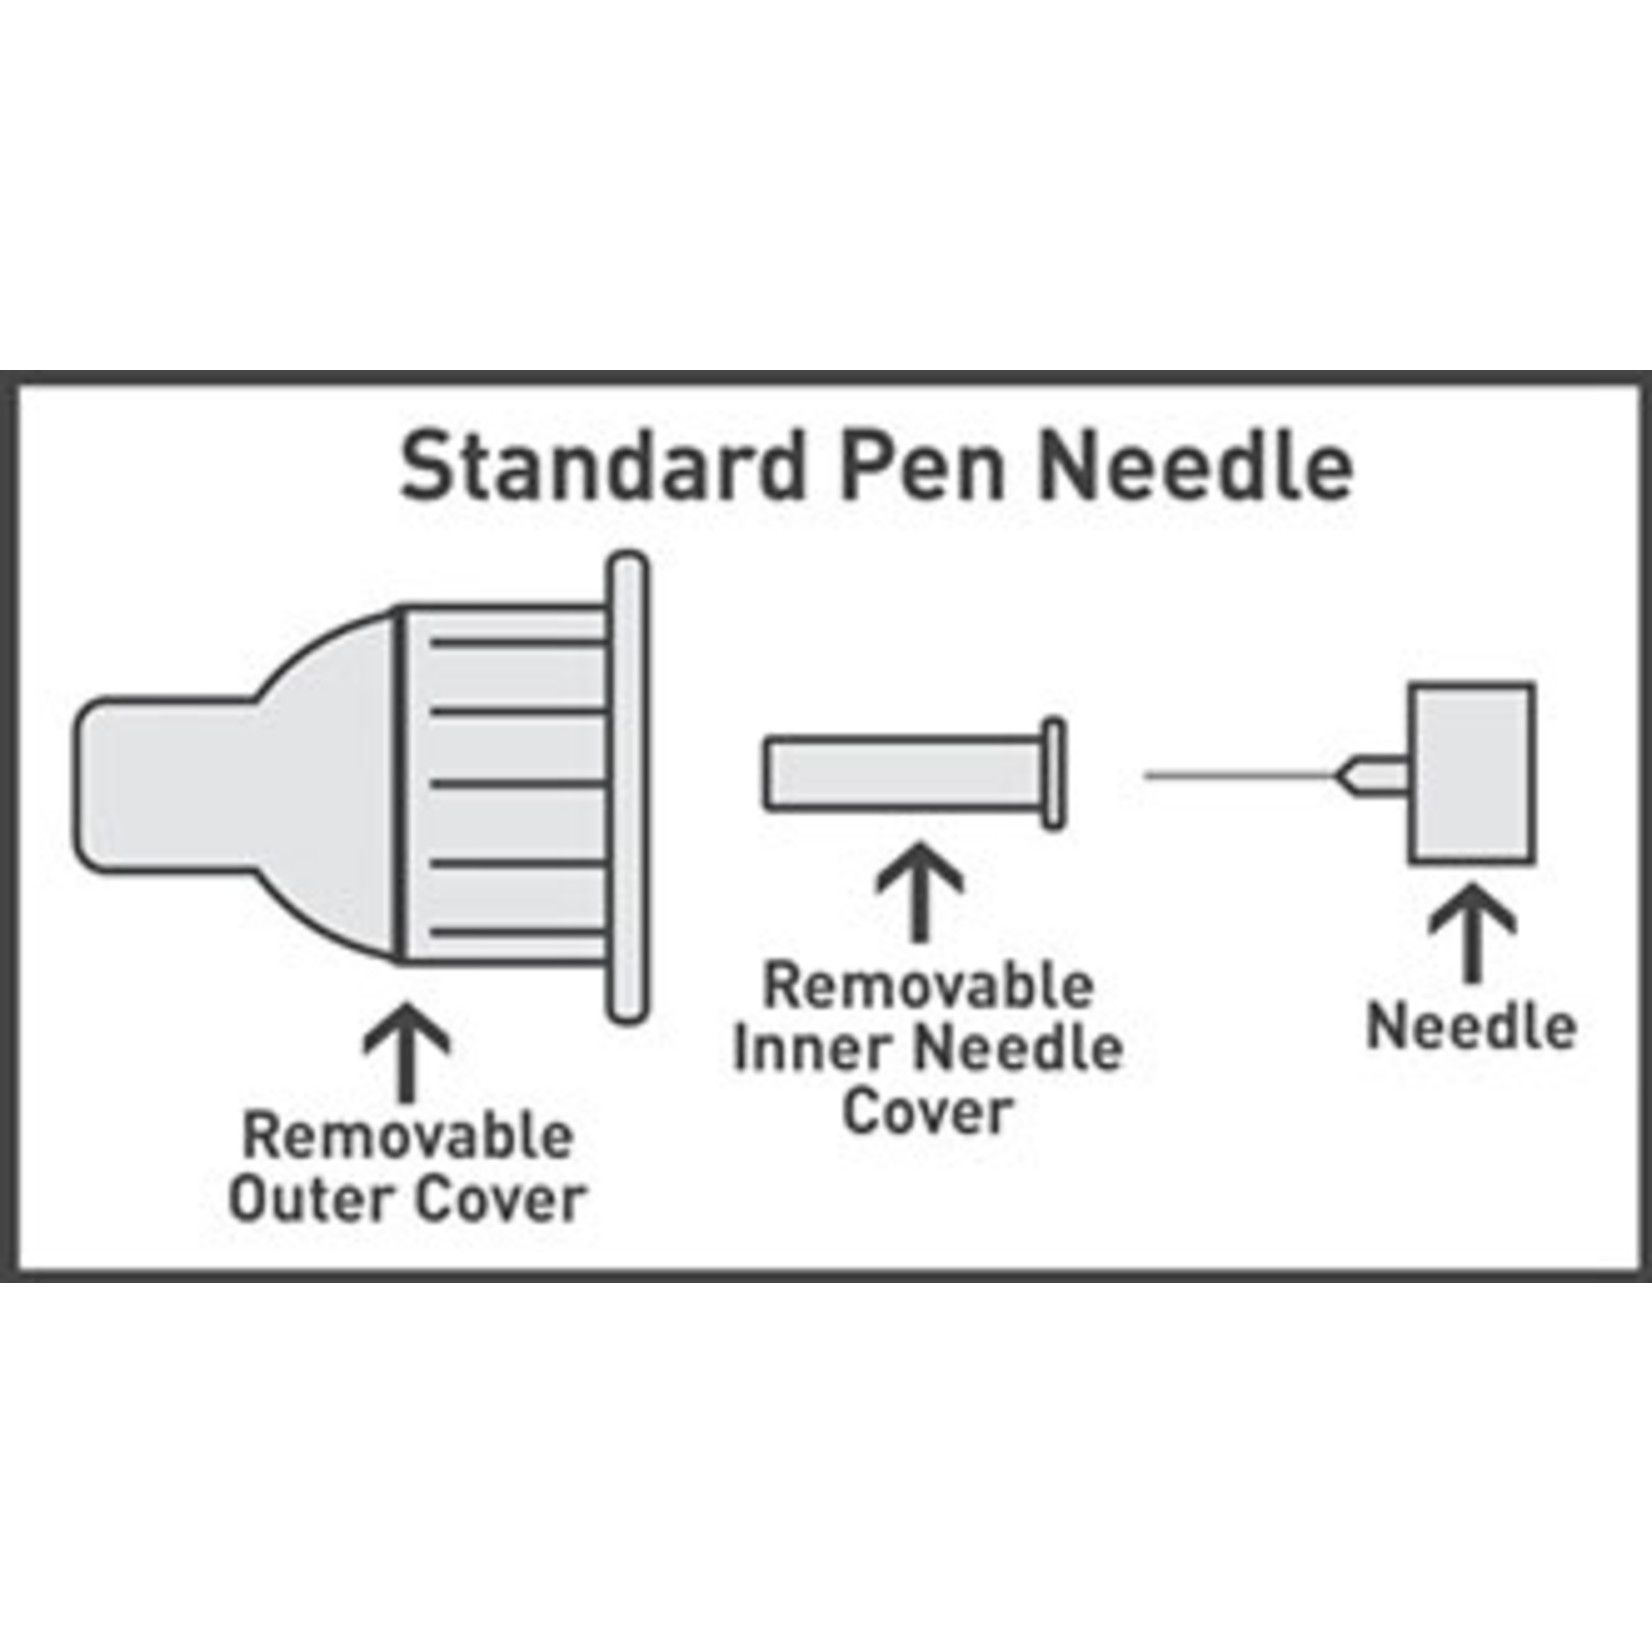 Easy Comfort Pen Needles 31G 5mm - NDC# 91237-0001-63 - Durable